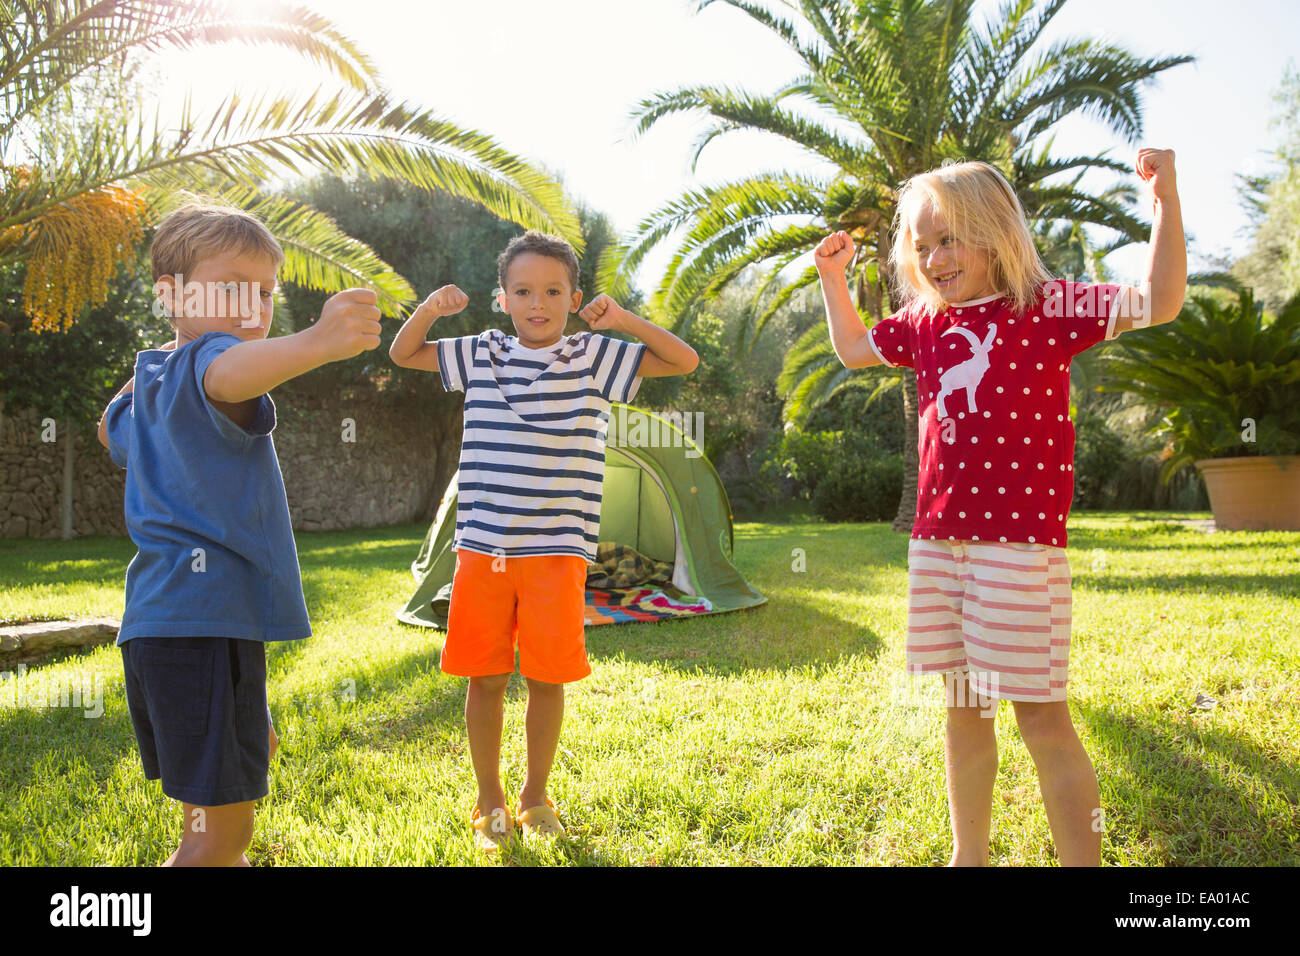 Trois enfants en jardin flexing muscles Banque D'Images